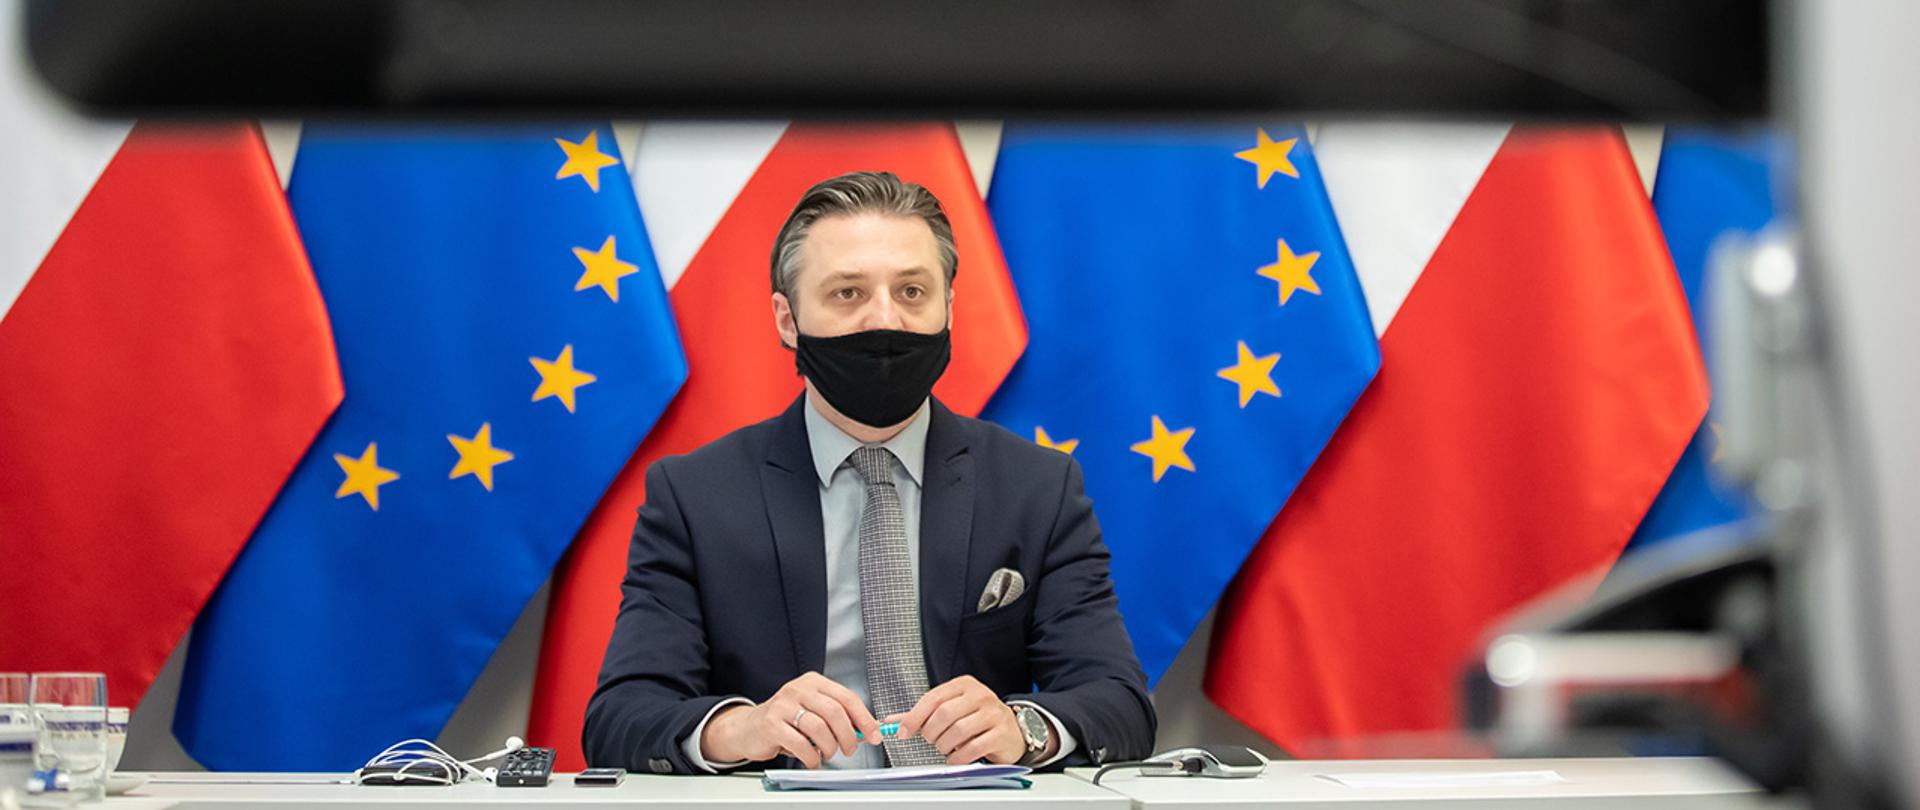 Na zdjęciu widać wiceministra Bartosza Grodeckiego siedzącego za stołem na tle flag Polski i UE wpatrującego się w ekran.